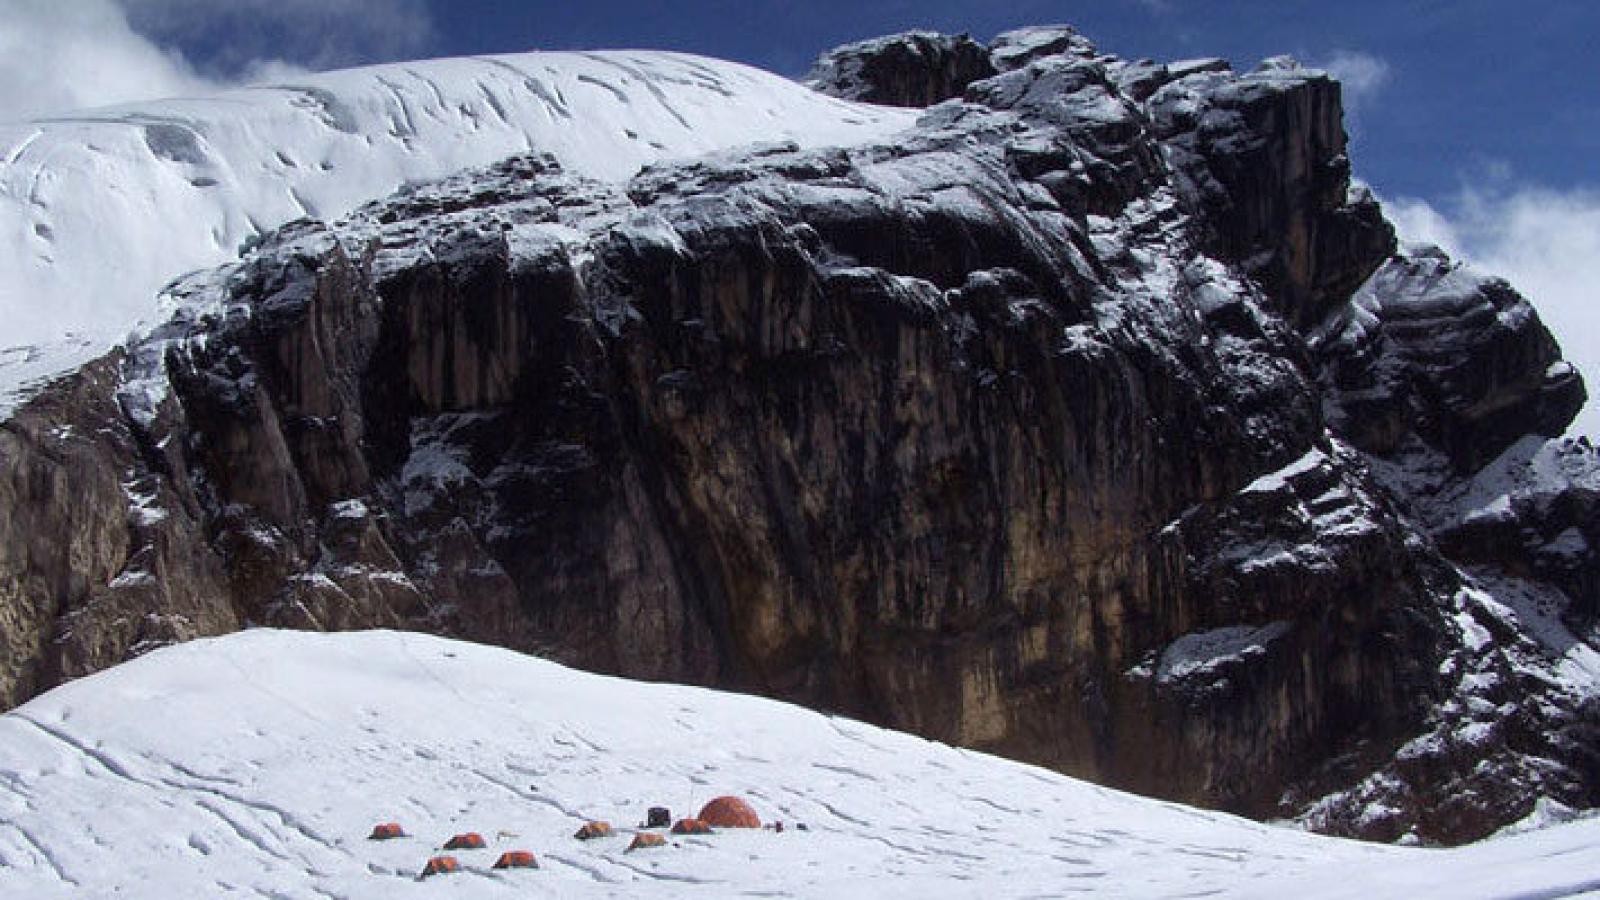 Ice core camp on a glacier